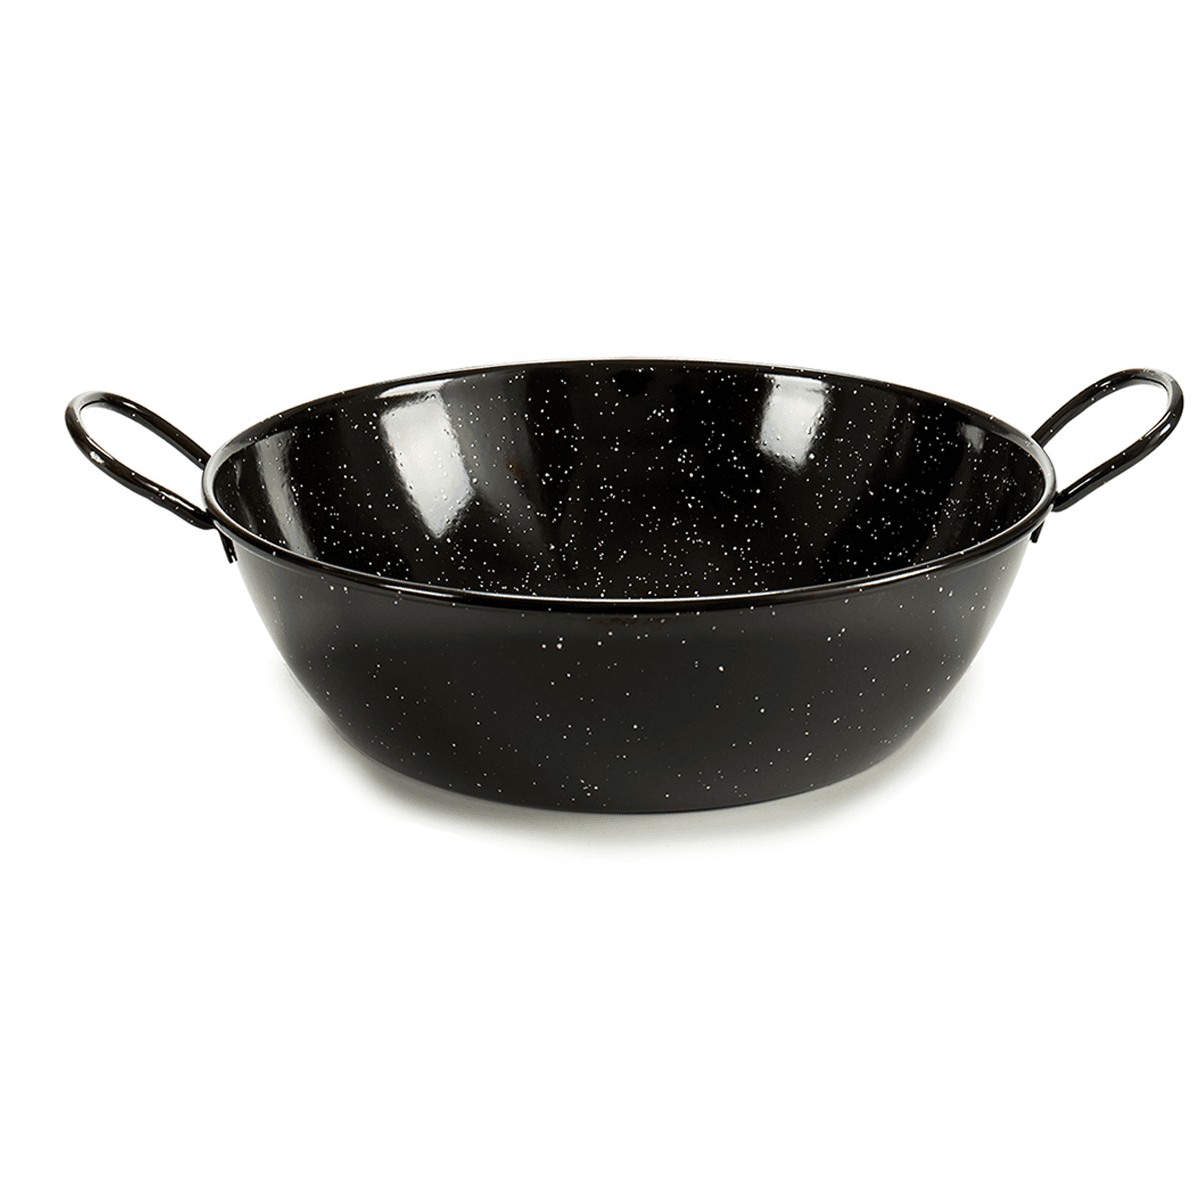 La Dehesa Black Deep Enameled Steel Frying Pan 36 cm